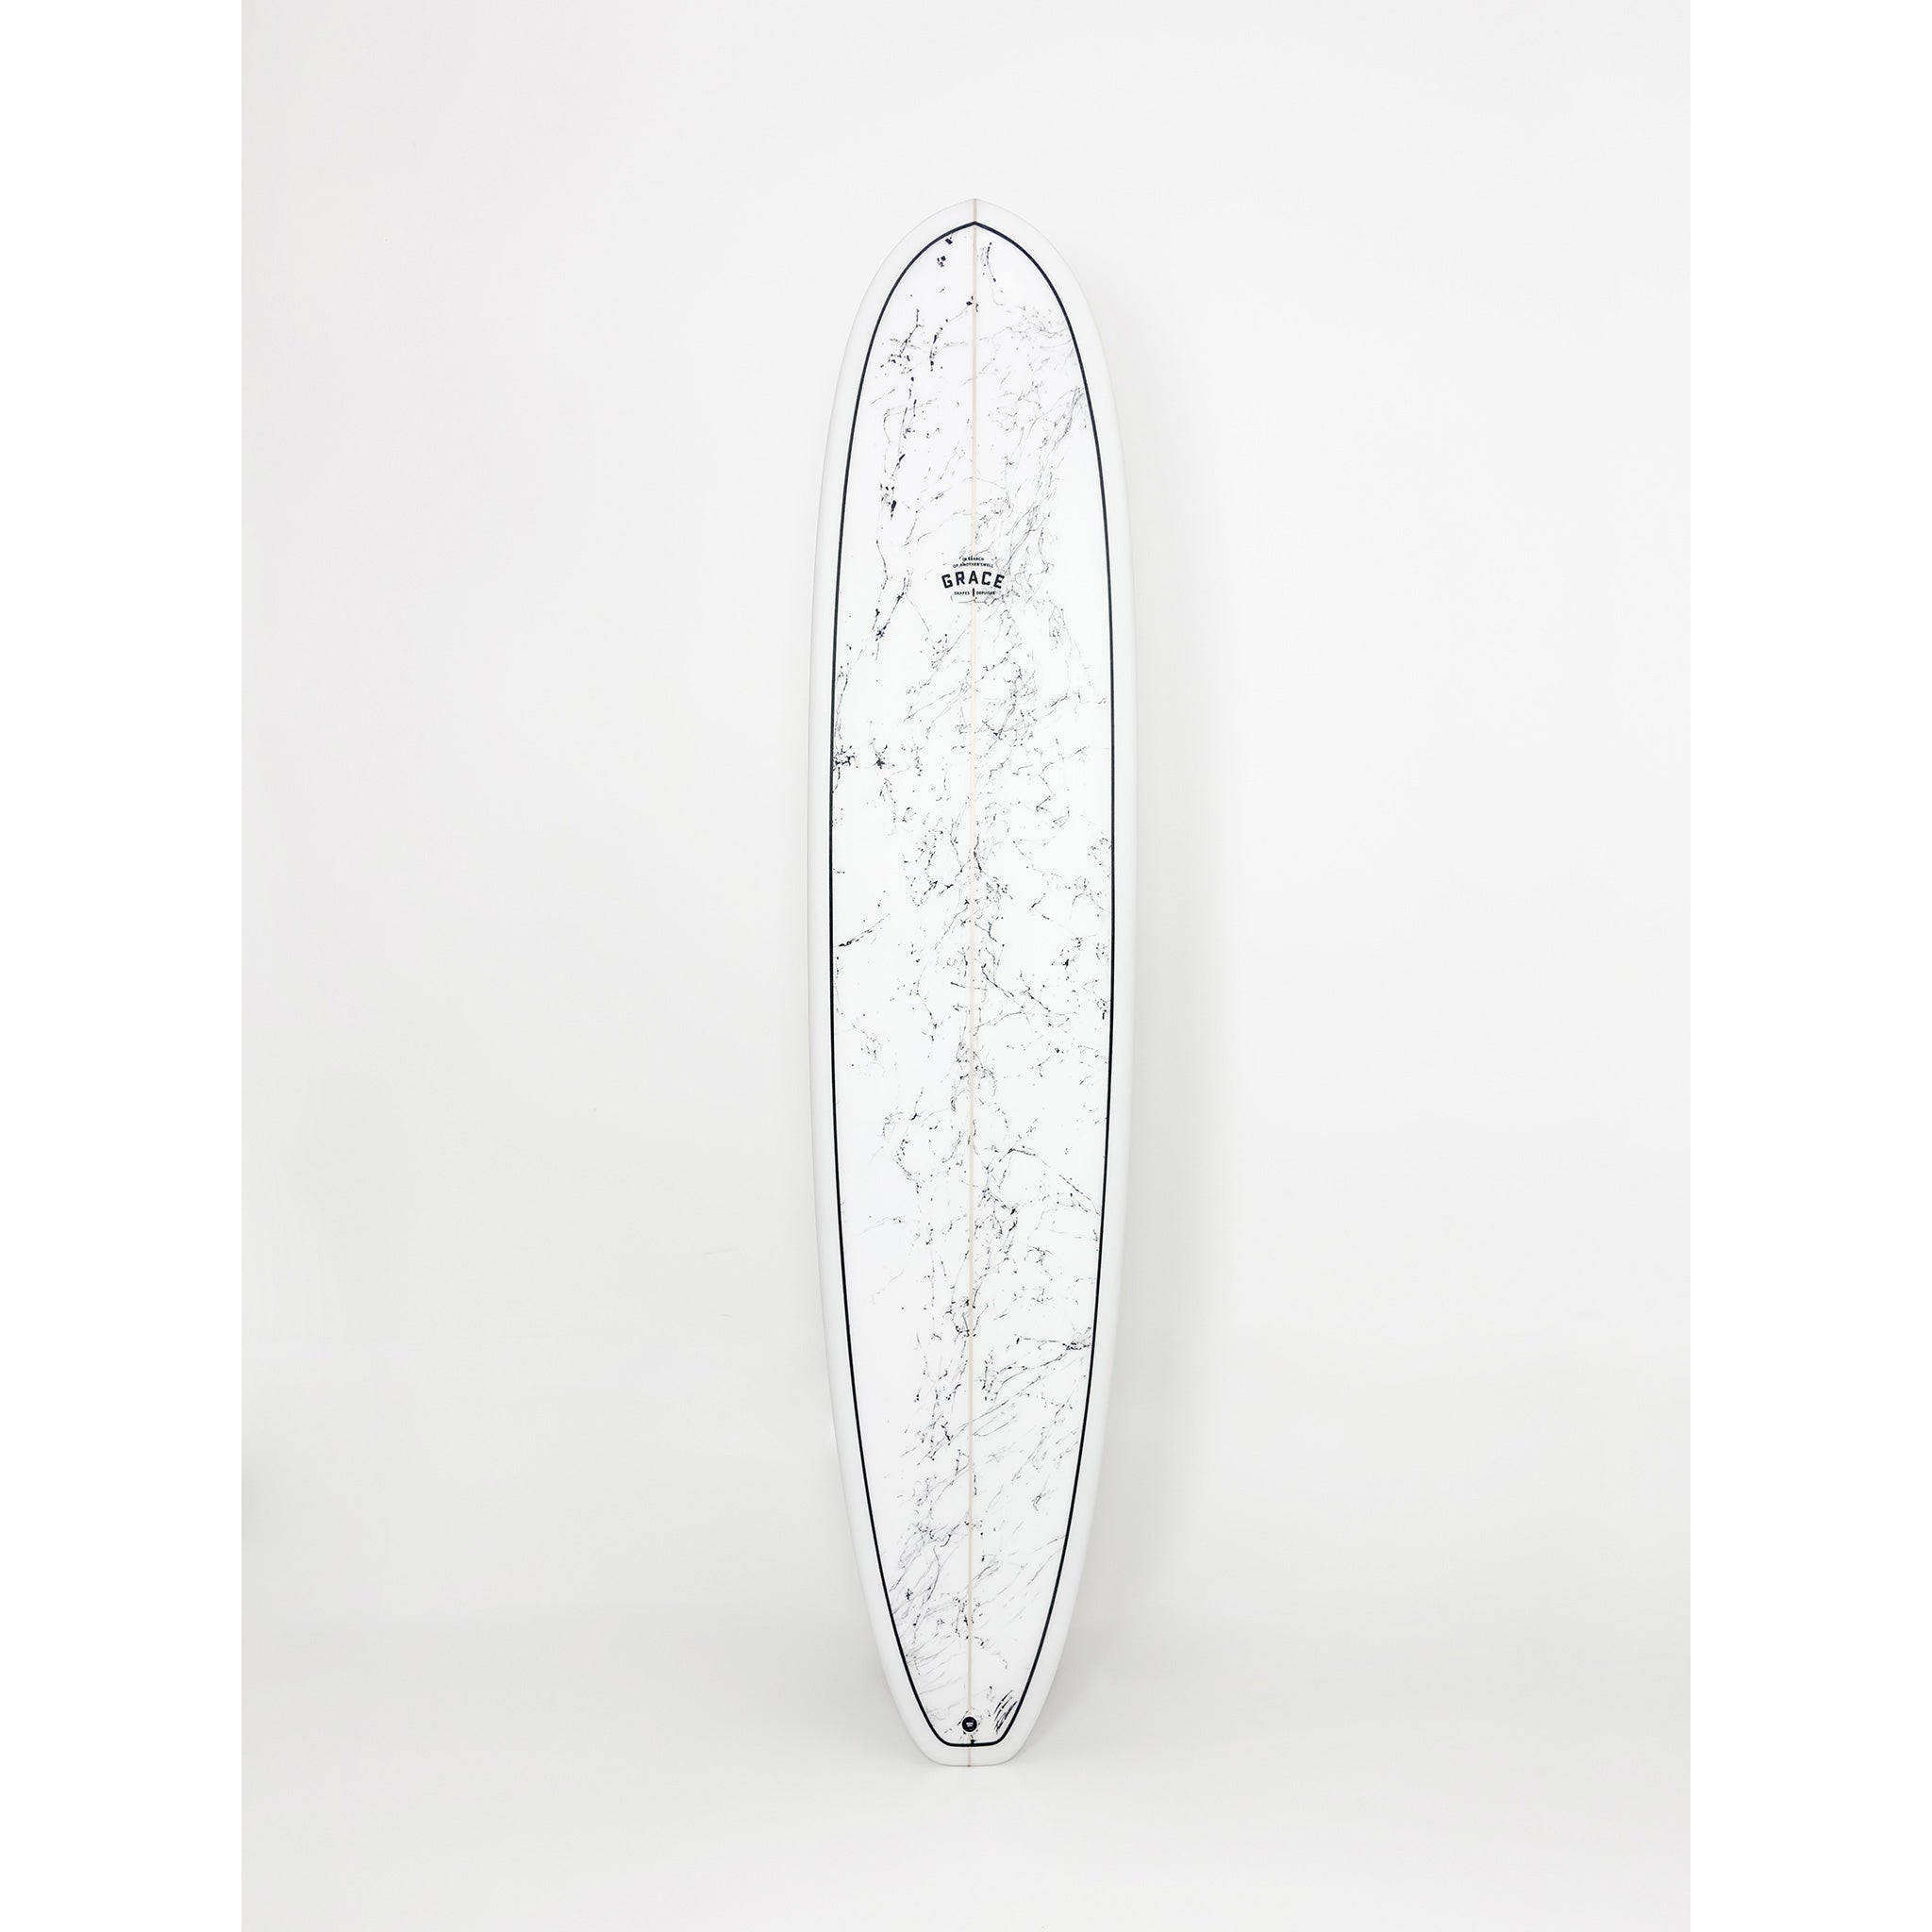 Phil Grace Surfboard Allrounder 8'6 x 22 1/4 x 2 7/8 62.7L - LGB023